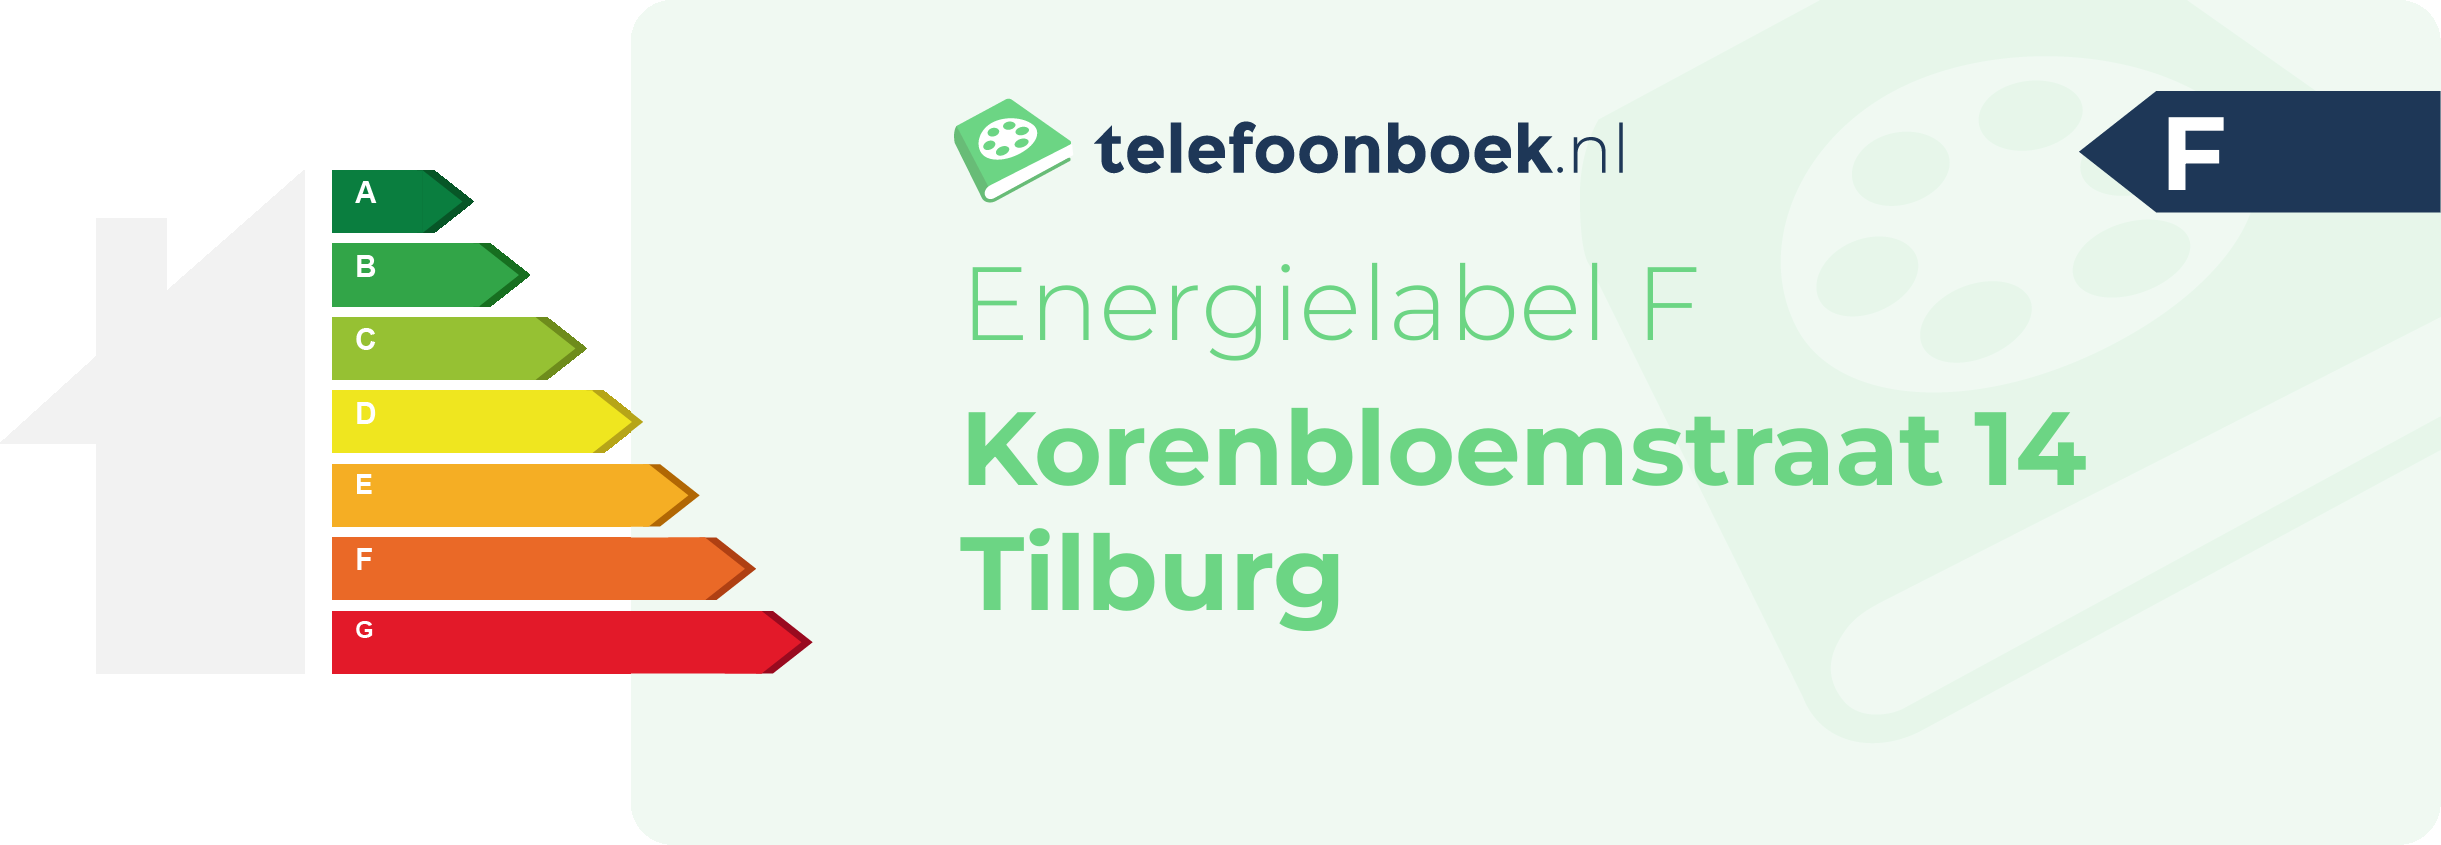 Energielabel Korenbloemstraat 14 Tilburg